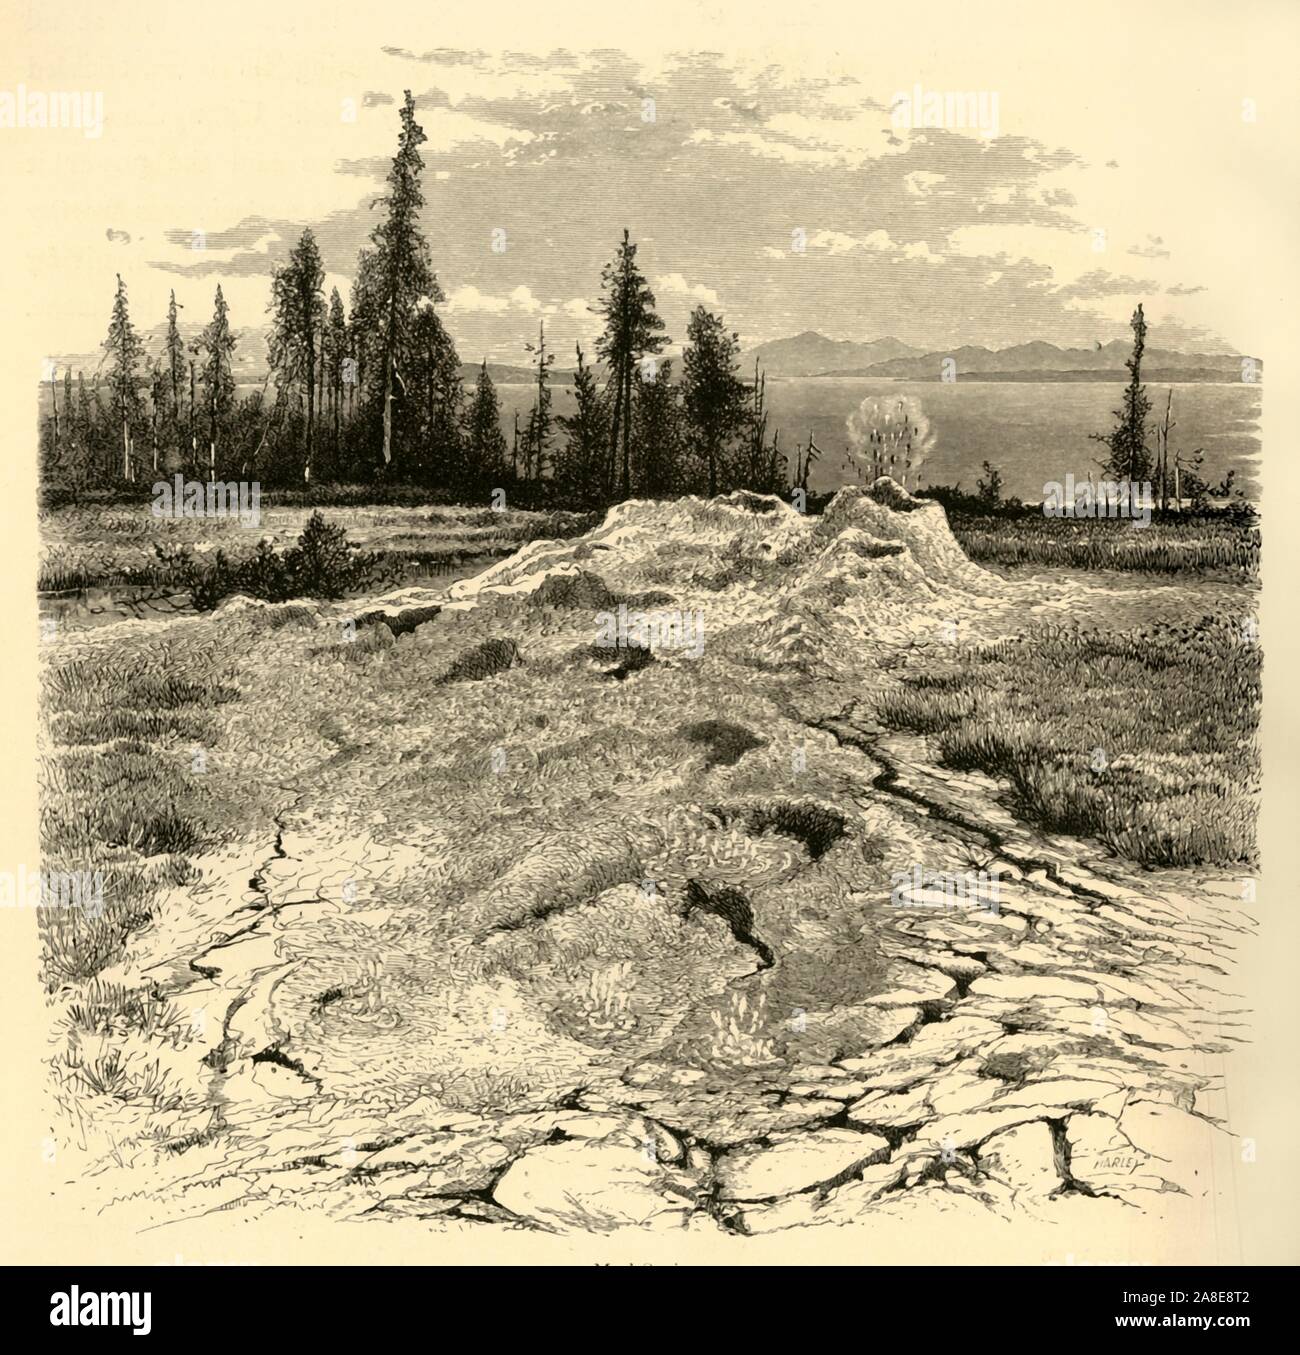 'Mud-molle", 1872. Funzione geotermico nel Parco Nazionale di Yellowstone, Wyoming negli Stati Uniti. "Sotto le cascate vi è una vasta area coperta con i depositi che si estendono dal lato sud del monte Washburn attraverso il cerchio di Yellowstone, copre un area di dieci o quindici miglia quadrate. Sul lato sud del monte Washburn vi è piuttosto un notevole gruppo di molle attive...Zolfo, rame, allume e soda, coprire la superficie. Vi è anche la precipitazione intorno ai confini di alcuni del fango-molle una efflorescenza bianco, probabilmente il nitrato di potassio...queste variano in temperatura da novantotto per...on Foto Stock